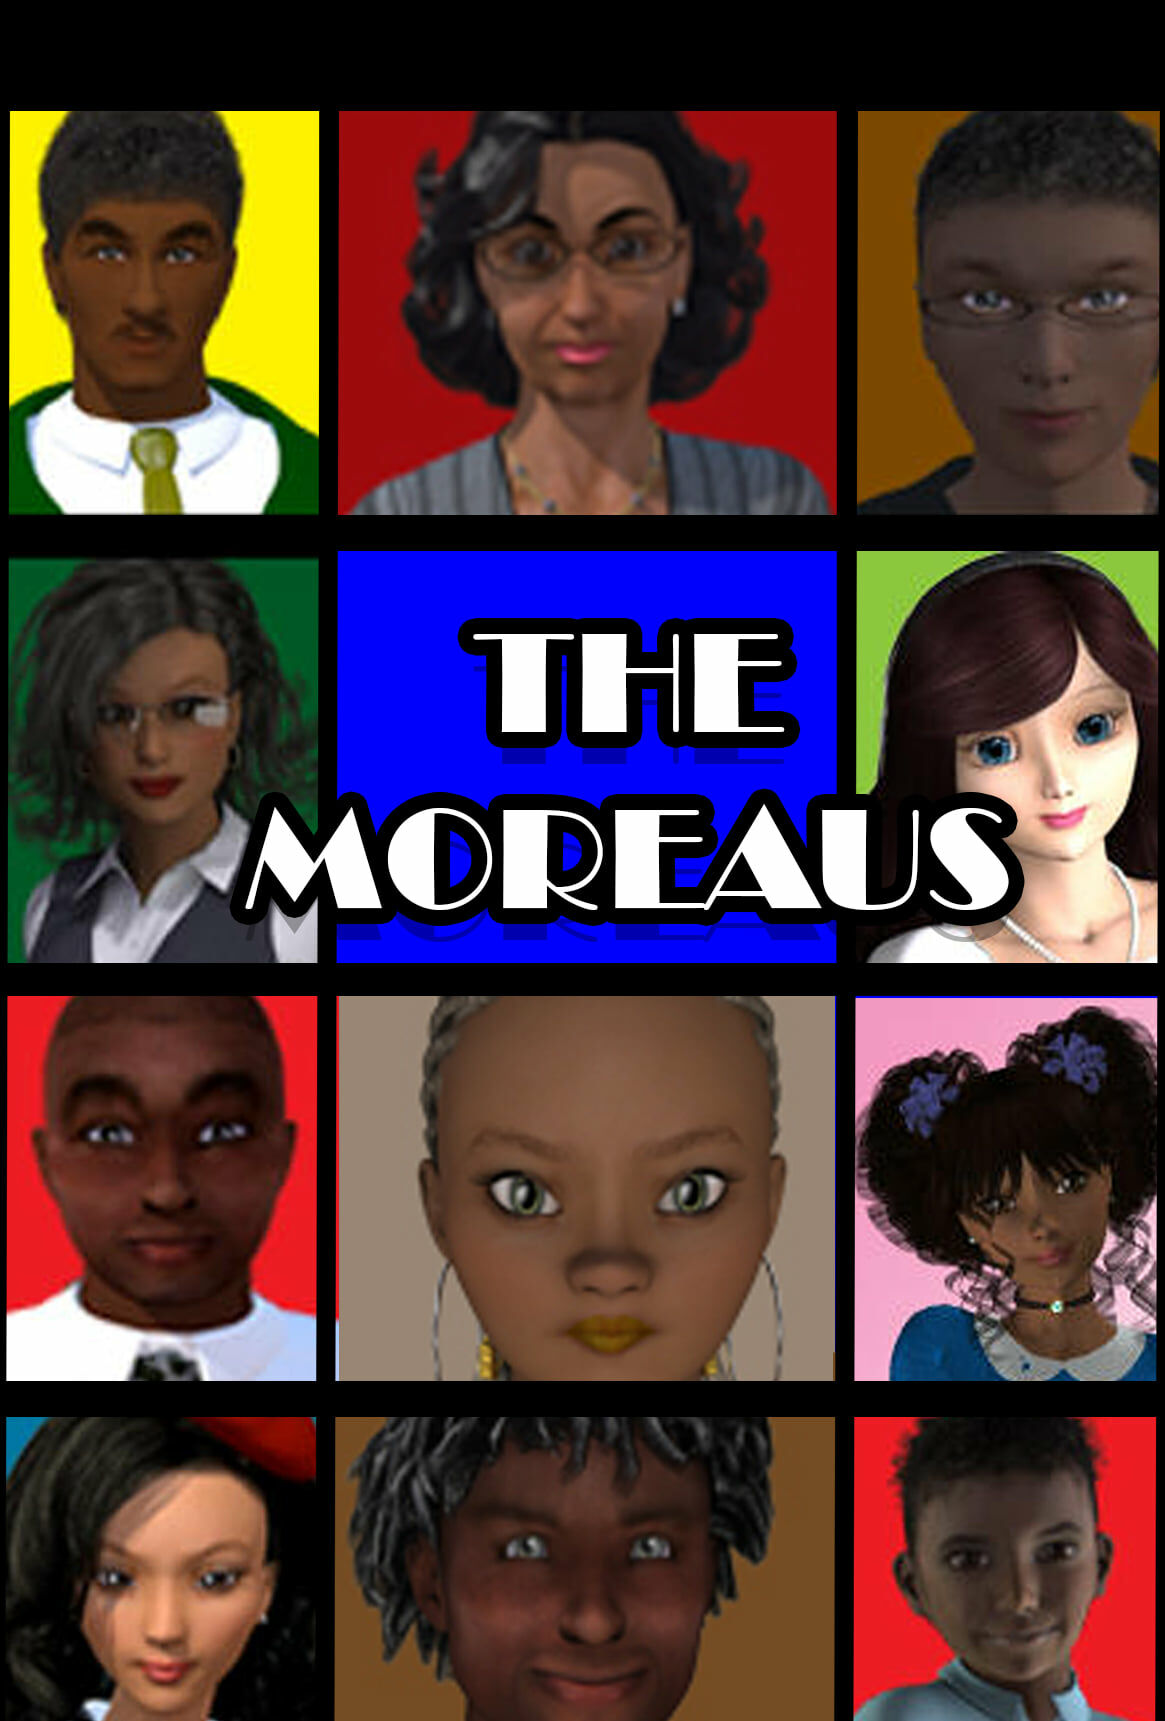 THE MOREAUS